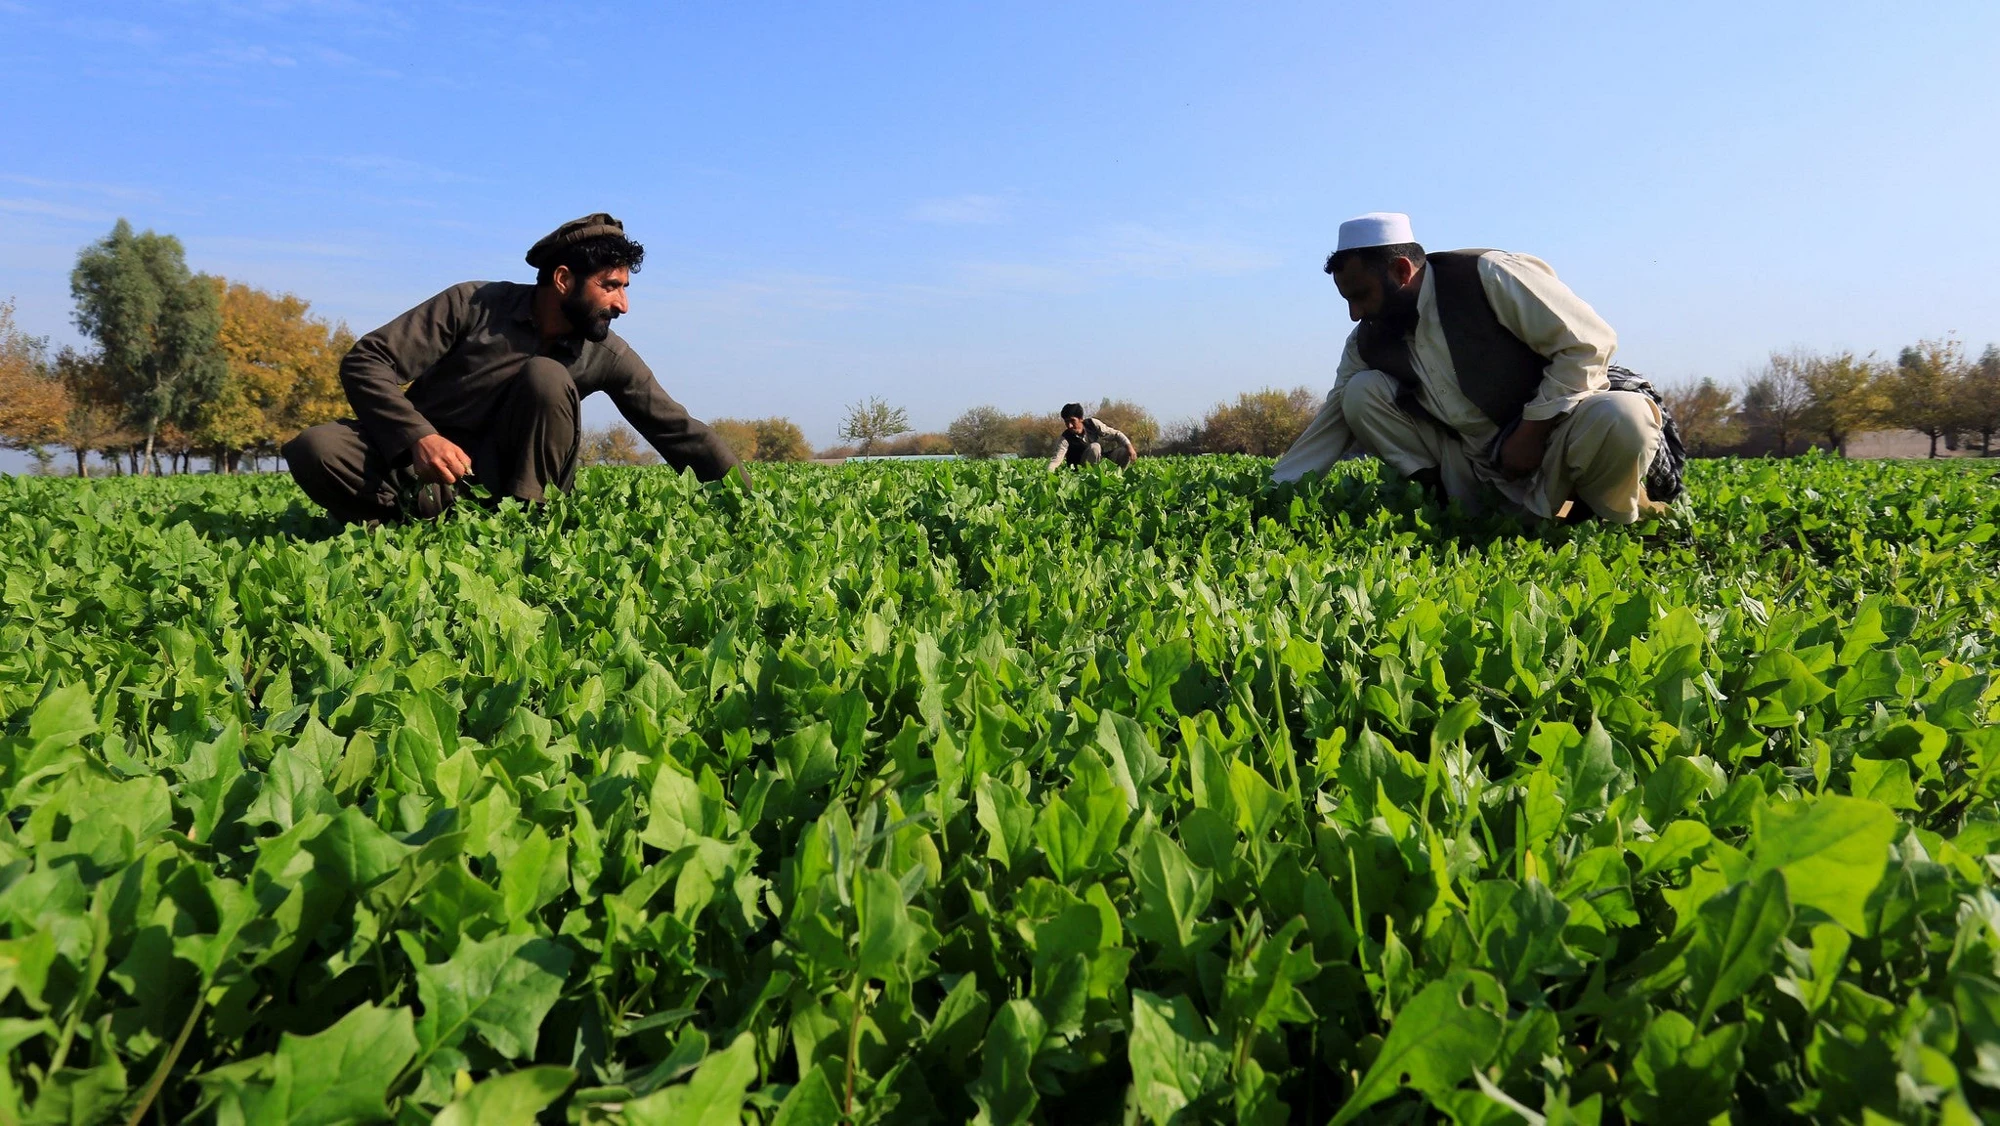 Des agriculteurs afghans vérifiant leurs récoltes ©Rumi Consultancy/Banque mondiale